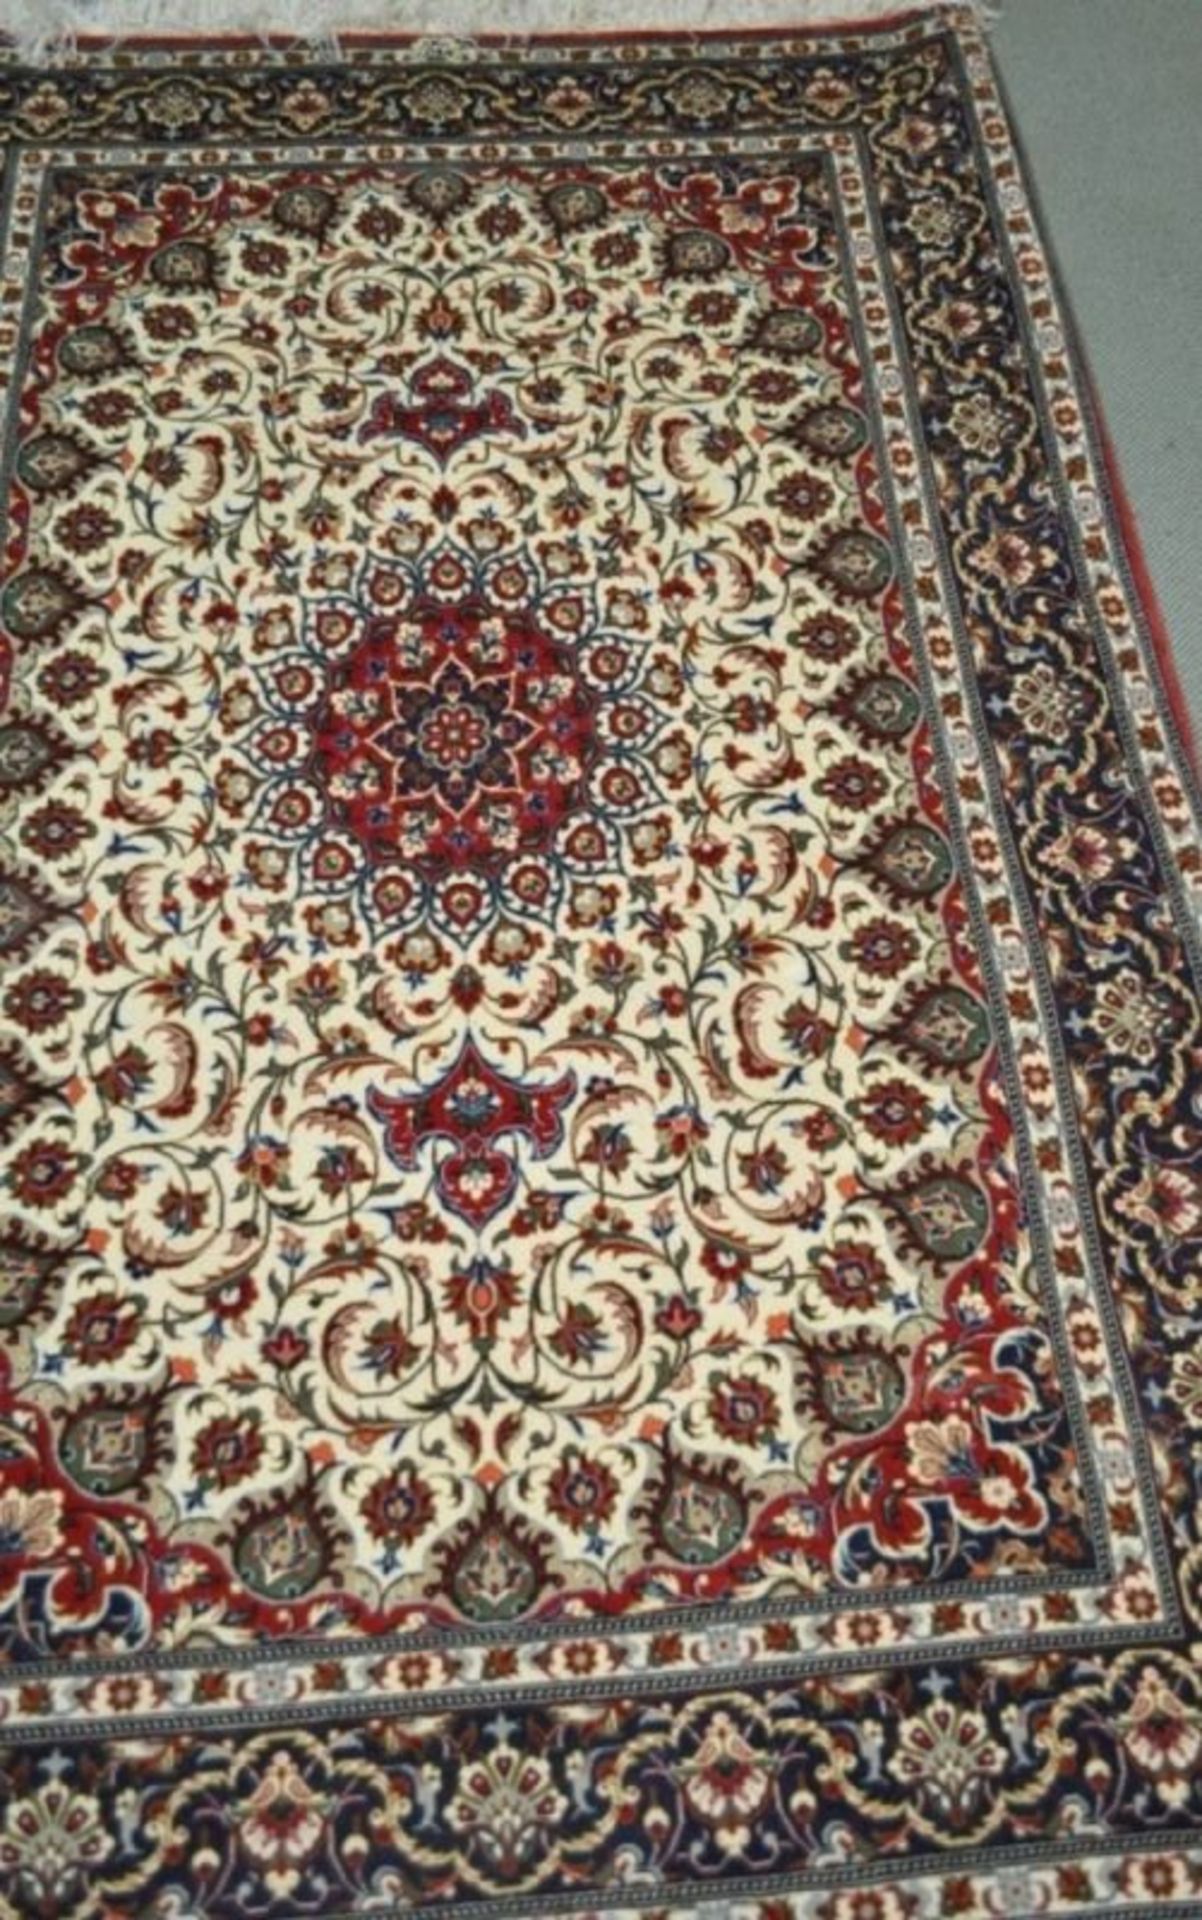 Schöner Orient Teppich, Herkunft unbek. ca. 1,63 x 1,09 m